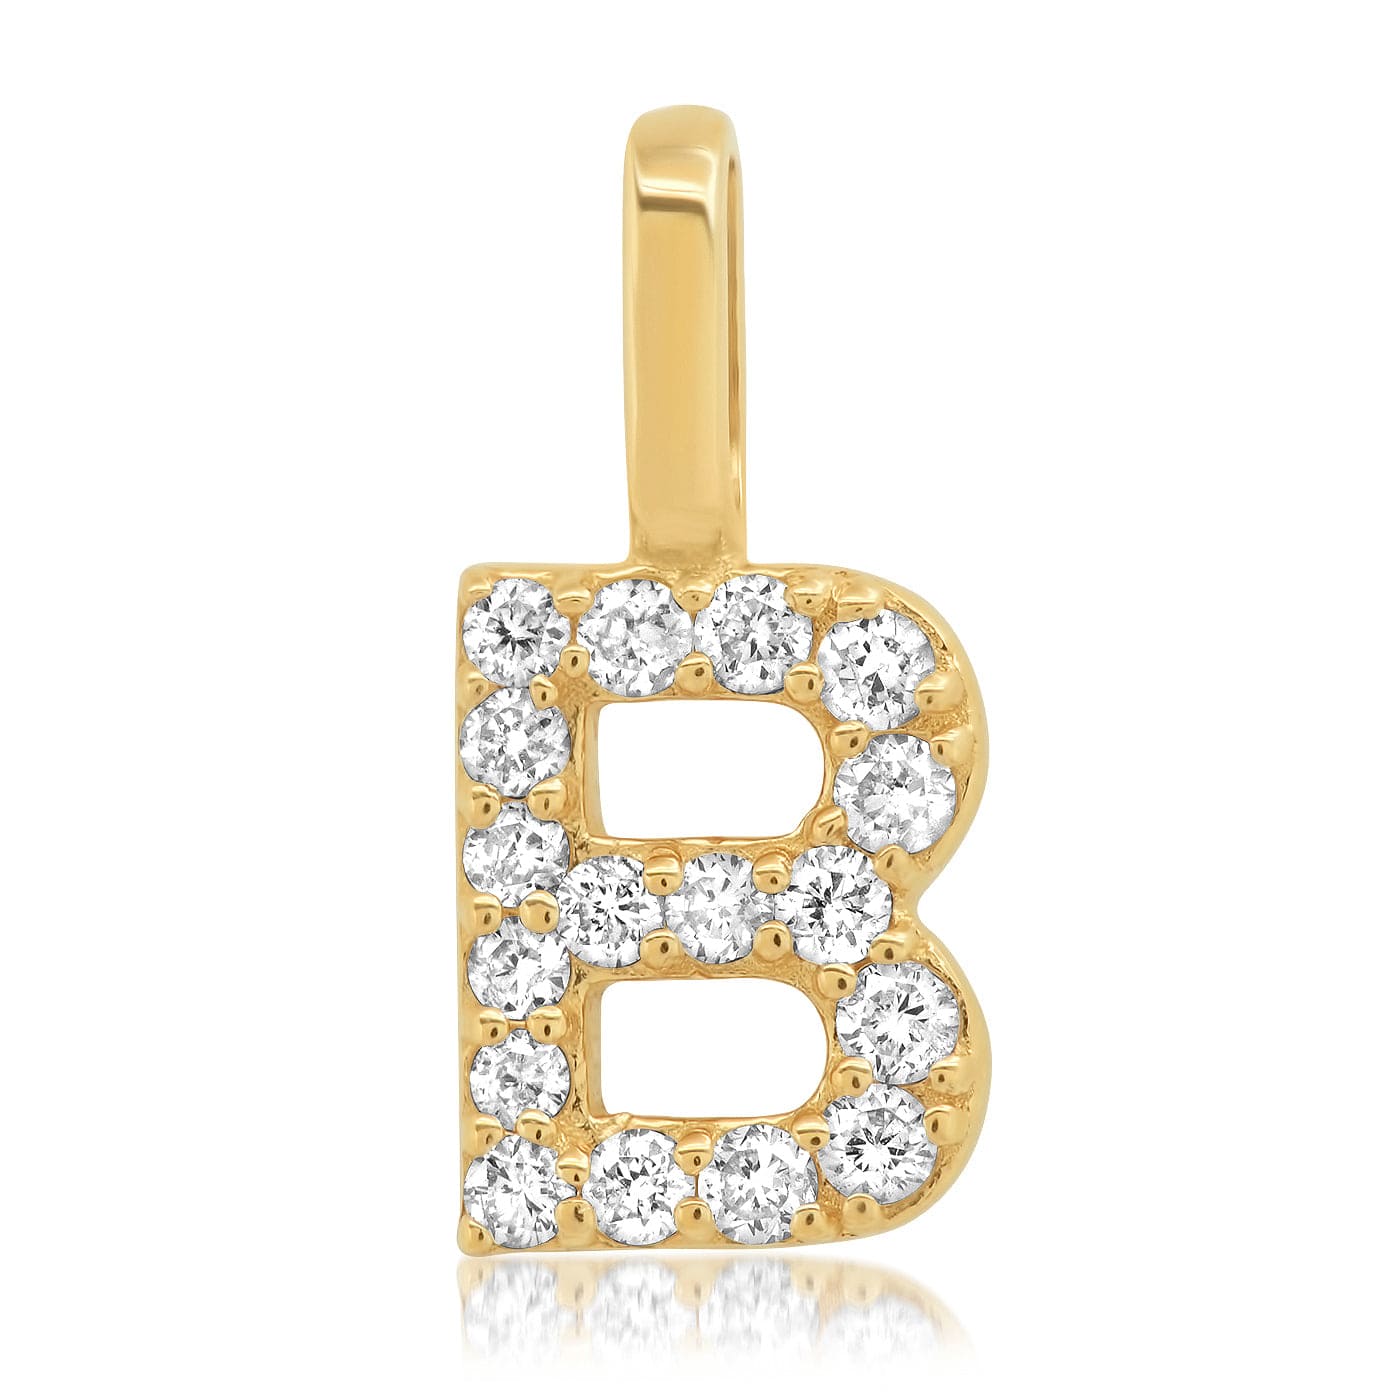 TAI JEWELRY Necklace B 14K Diamond Pavé Monogram Pendant